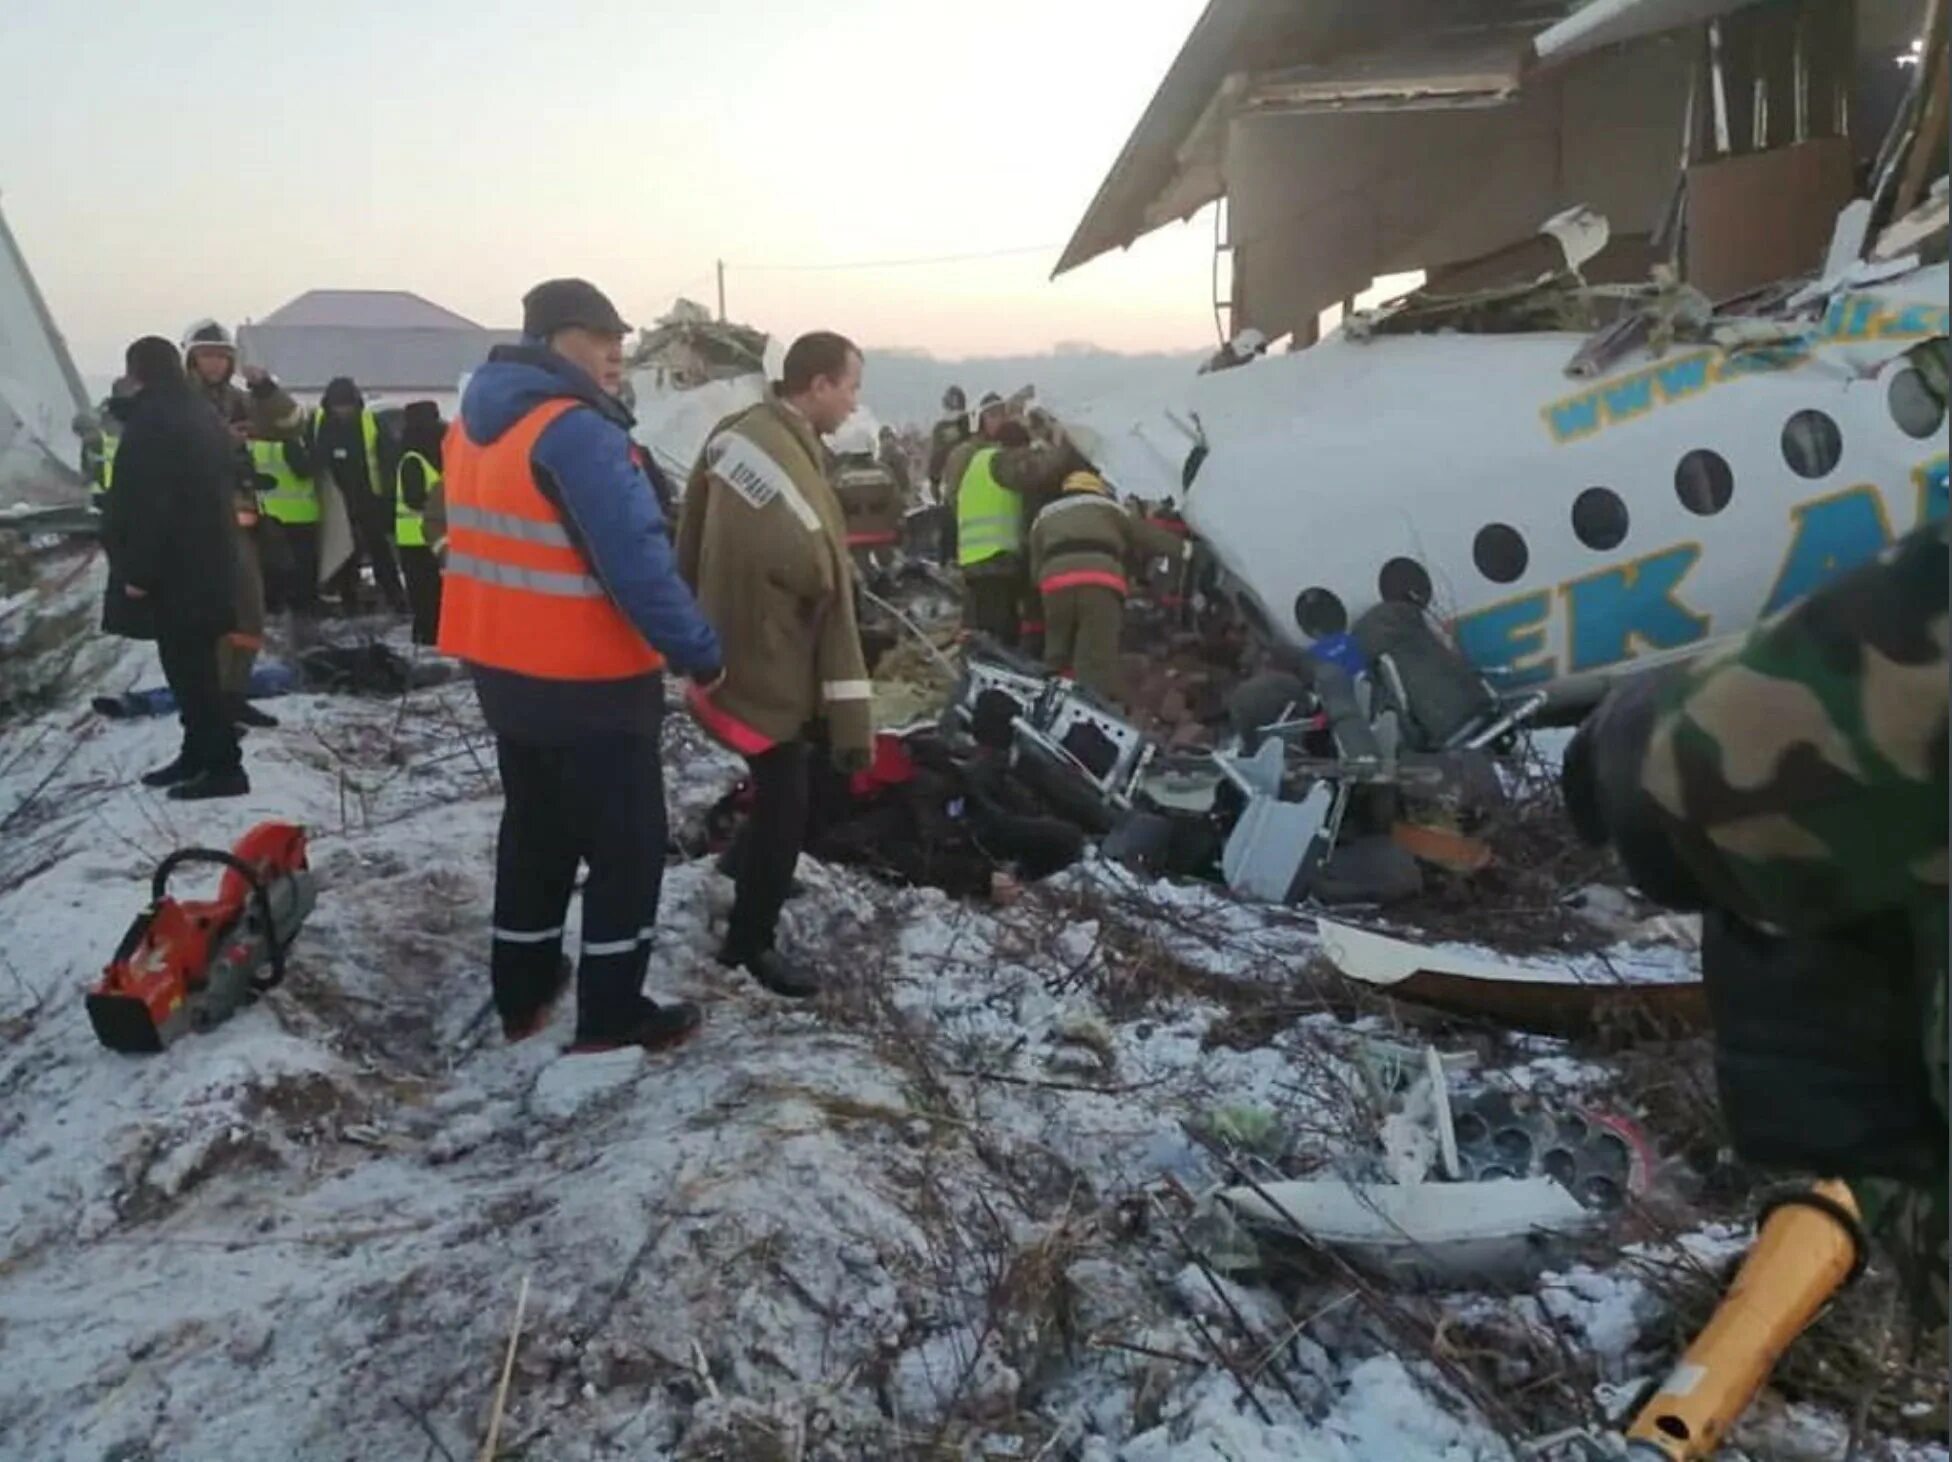 Fokker 100 bek Air катастрофа. Авиакатастрофа в Алма Ате 2019. Крушение а320 в Сочи. Бек Эйр катастрофа 27 декабря.